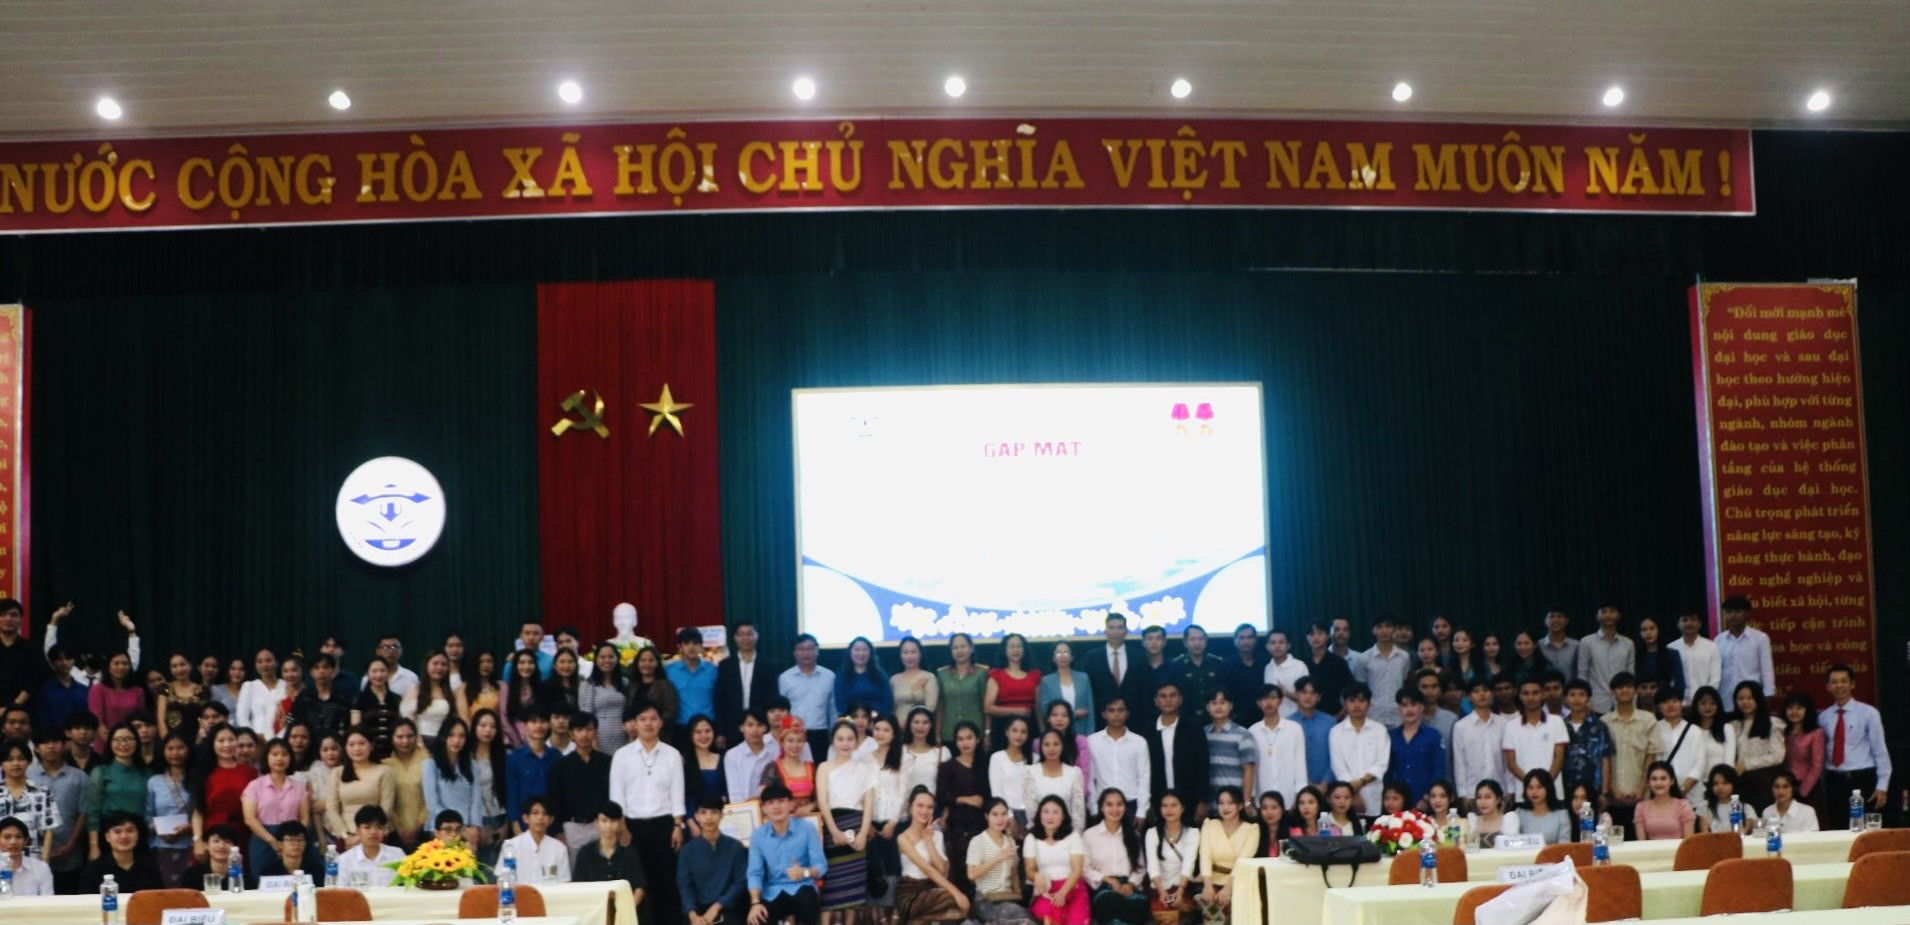 Lãnh đạo Trường Đại học Quảng Nam cùng lãnh đạo các sở, ban, ngành chụp hình lưu niệm cùng lưu học sinh Lào.